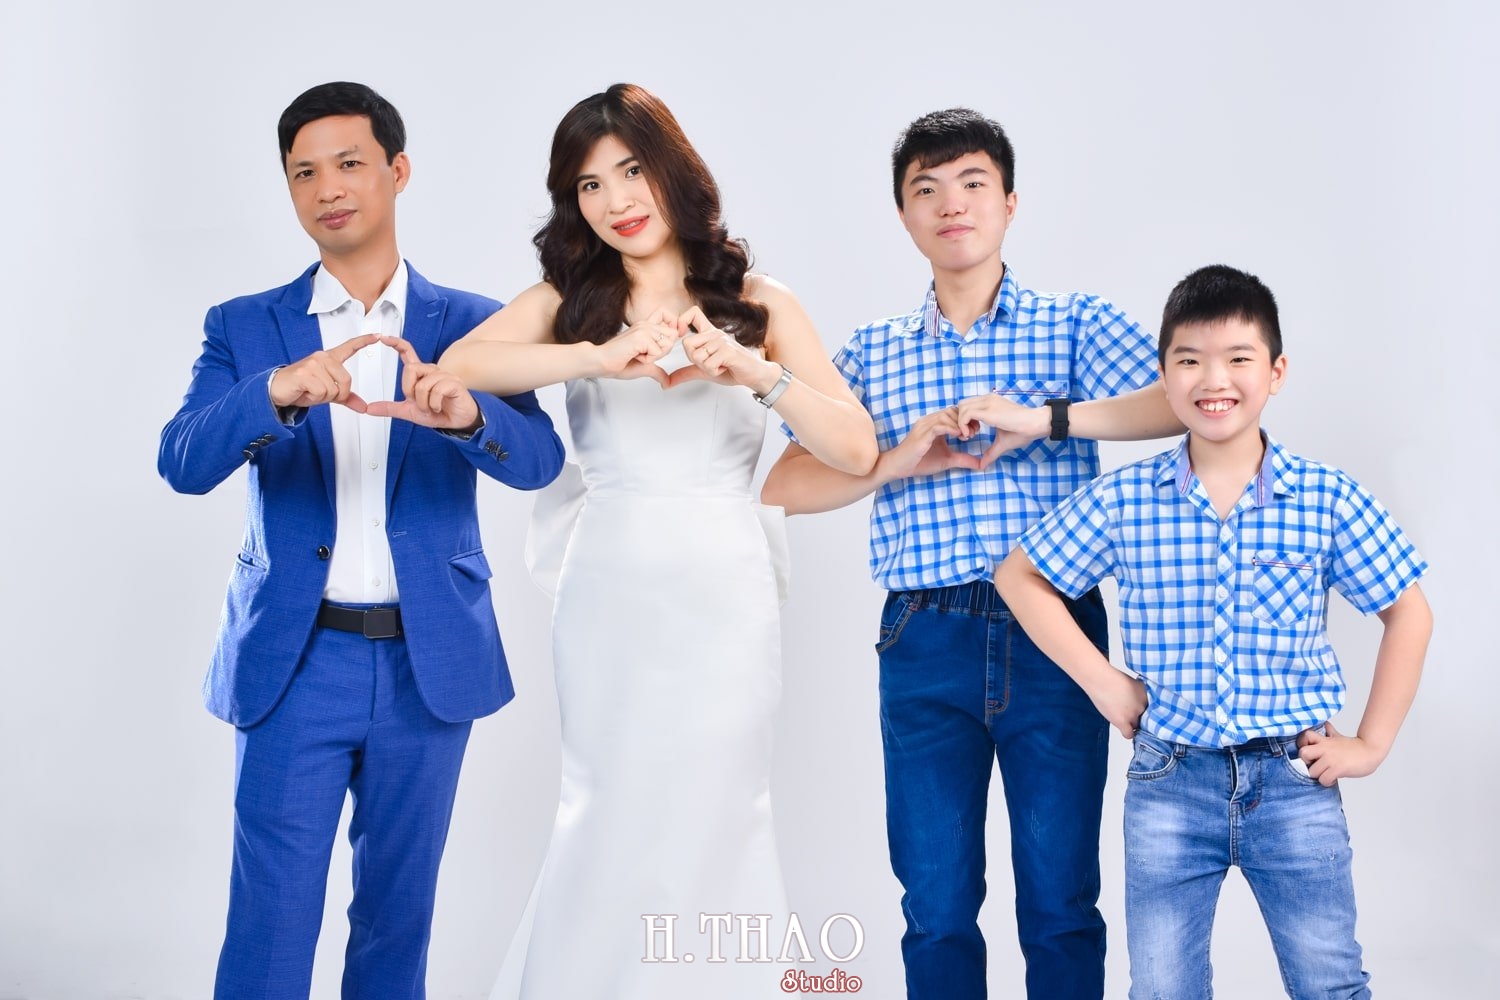 Anh gia dinh 4 nguoi 9 min - Studio chụp ảnh gia đình tự nhiên nhất tại Tp.HCM – HThao Studio